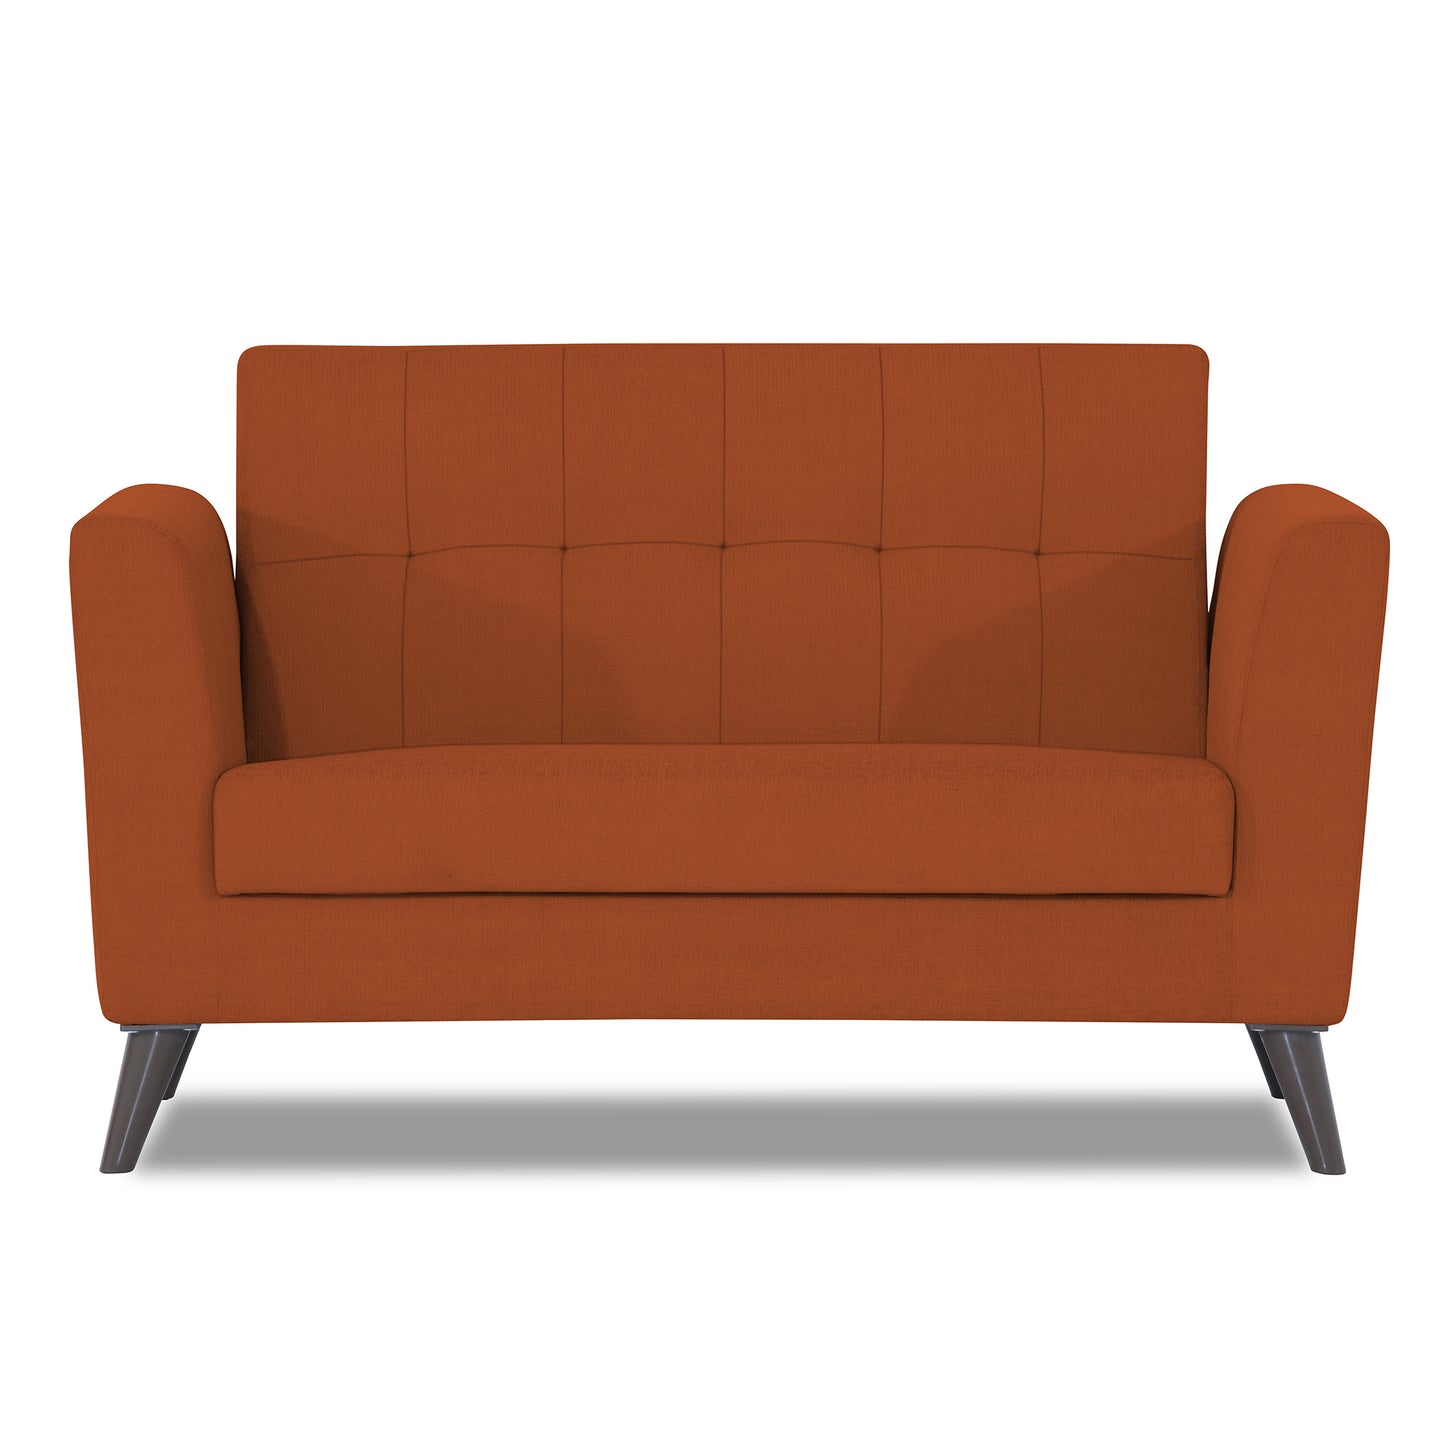 Adorn India Dannis 2 Seater Sofa